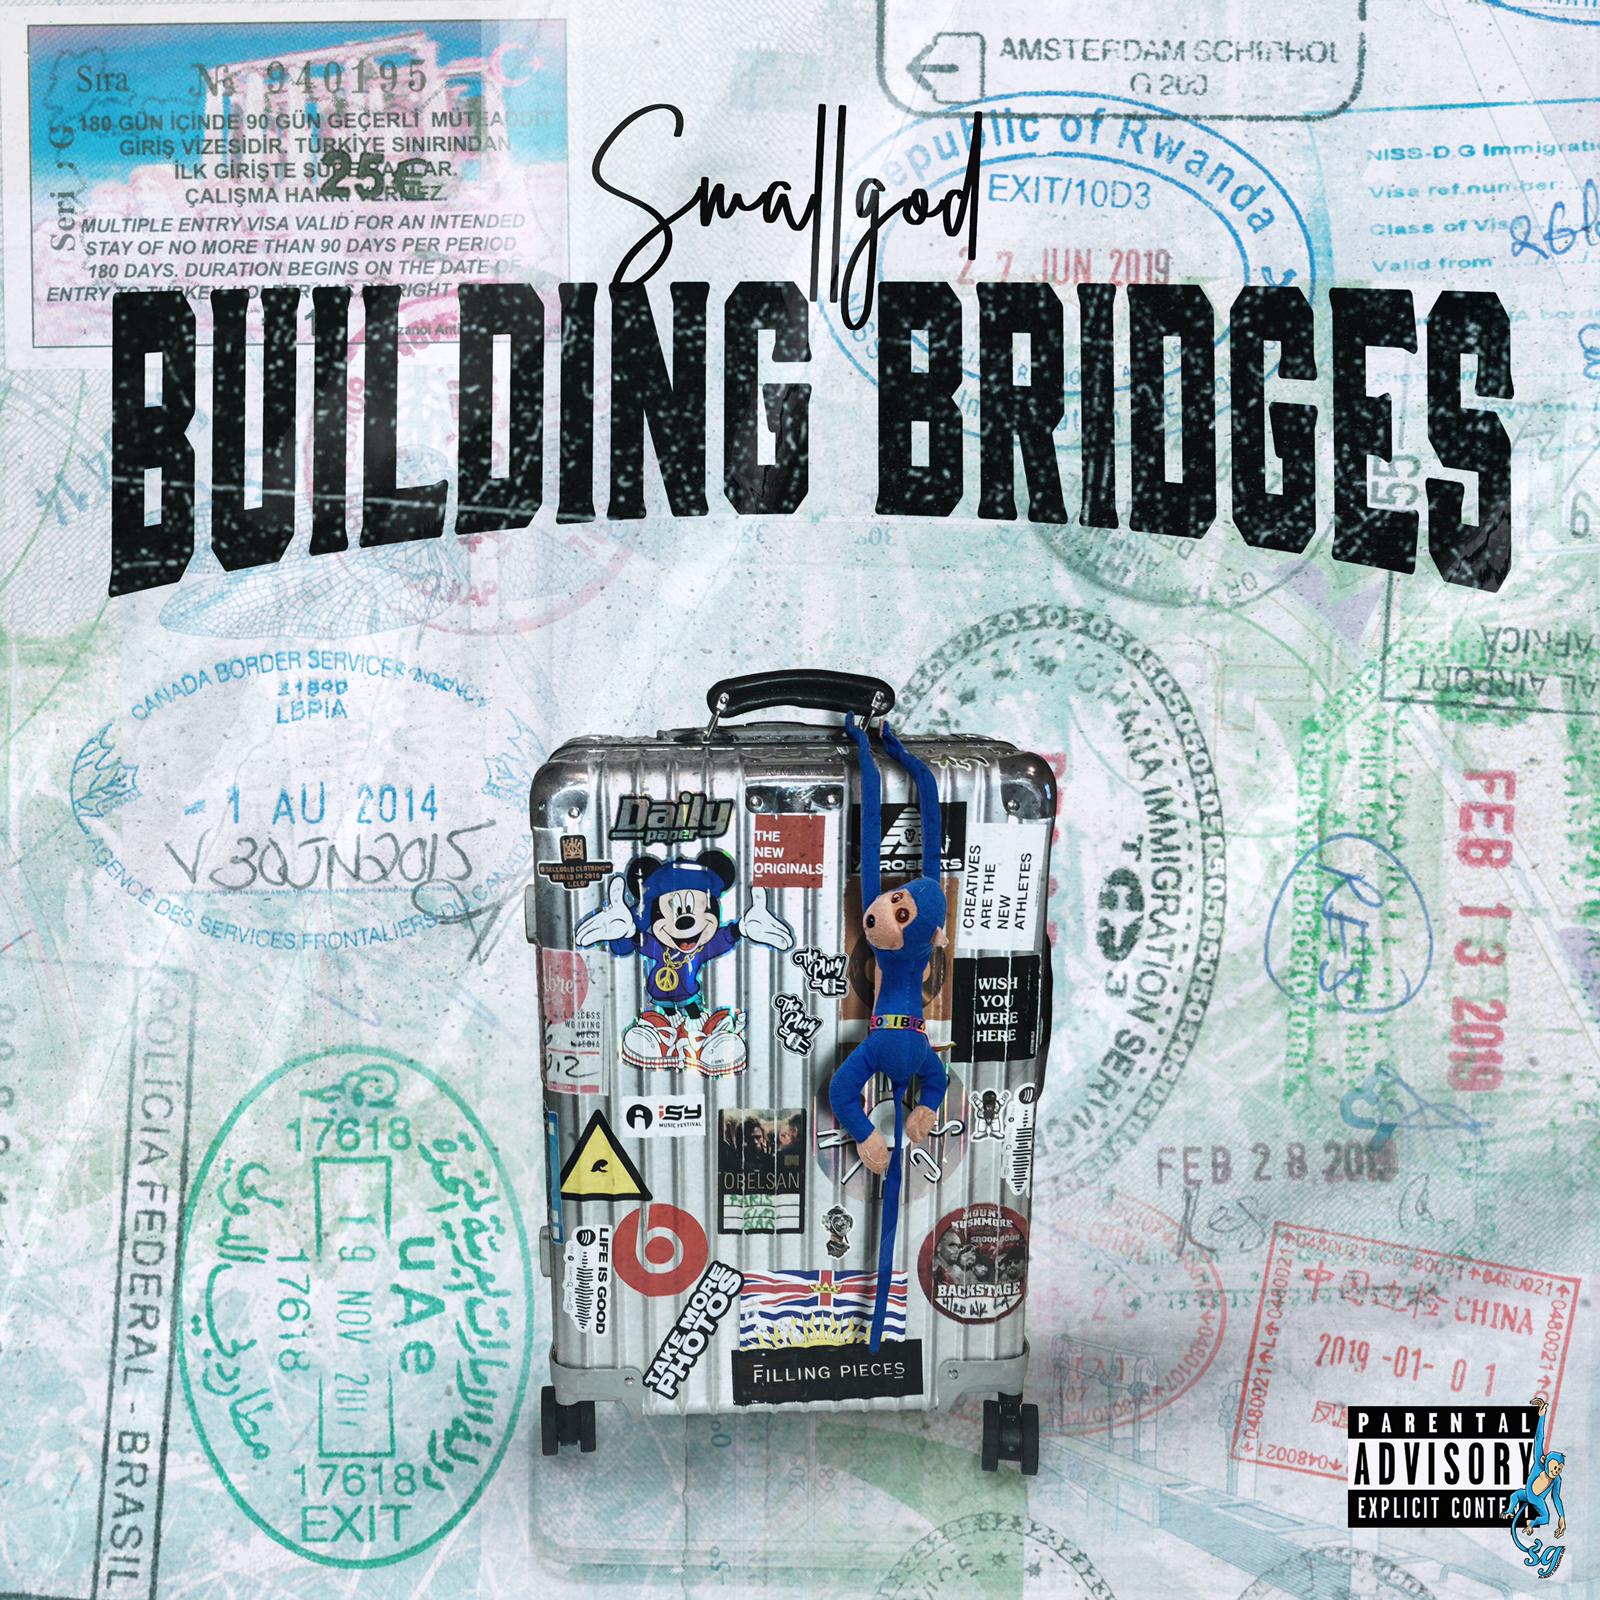 Smallgod’s ‘Building Bridges’ album